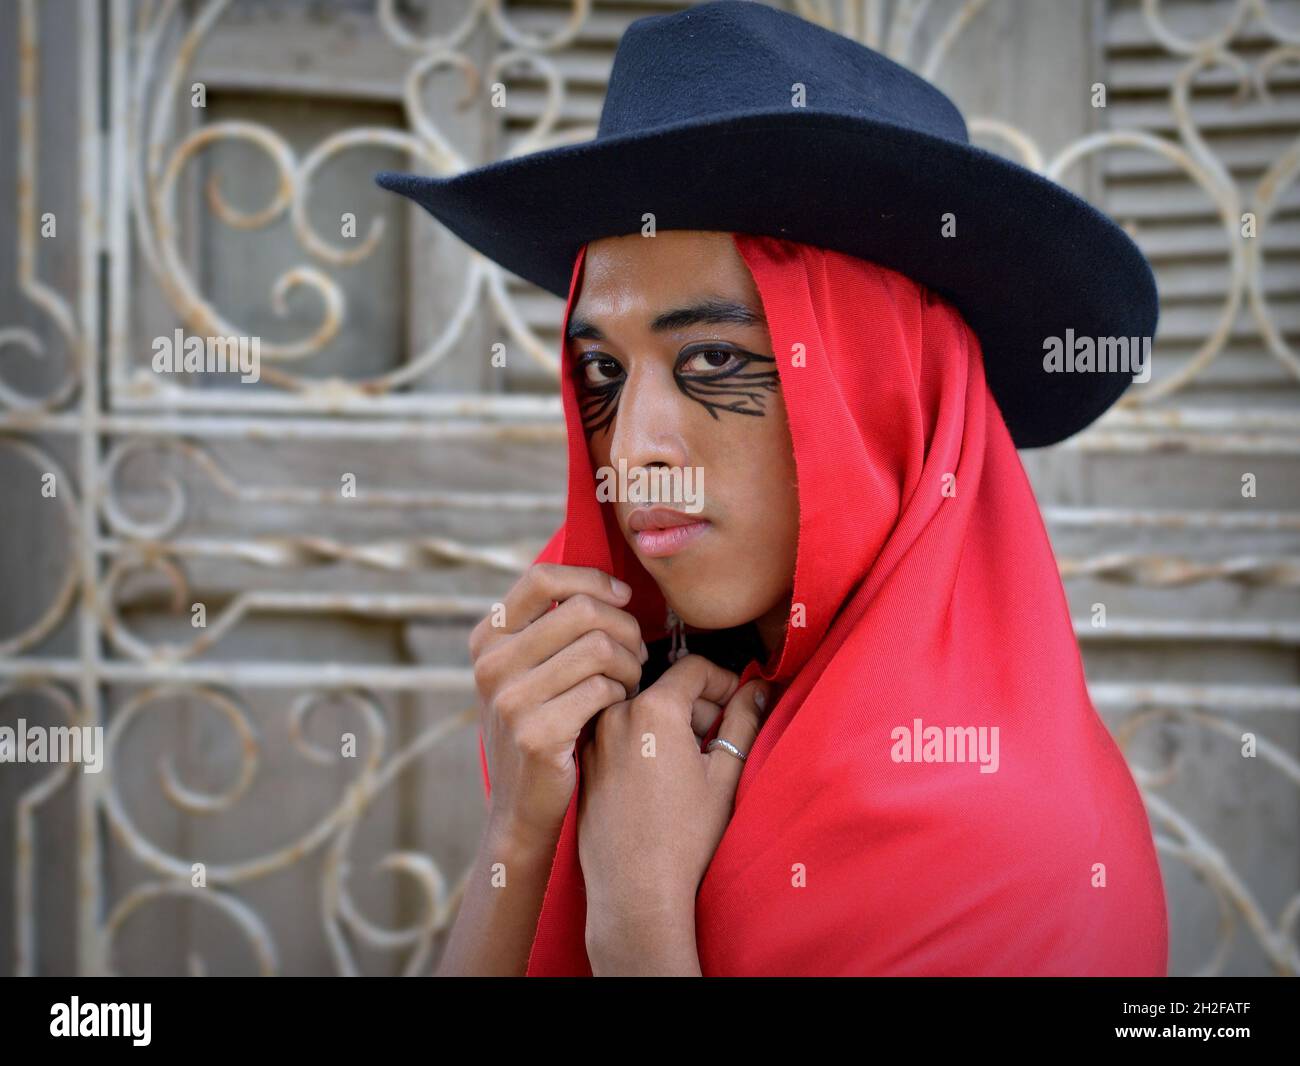 Der hübsche junge, nicht binäre Latino trägt einen schwarzen Hut mit rotem mexikanischem rebozo als Kapuze und posiert vor einem weißen schmiedeeisernen Fenstergrill. Stockfoto